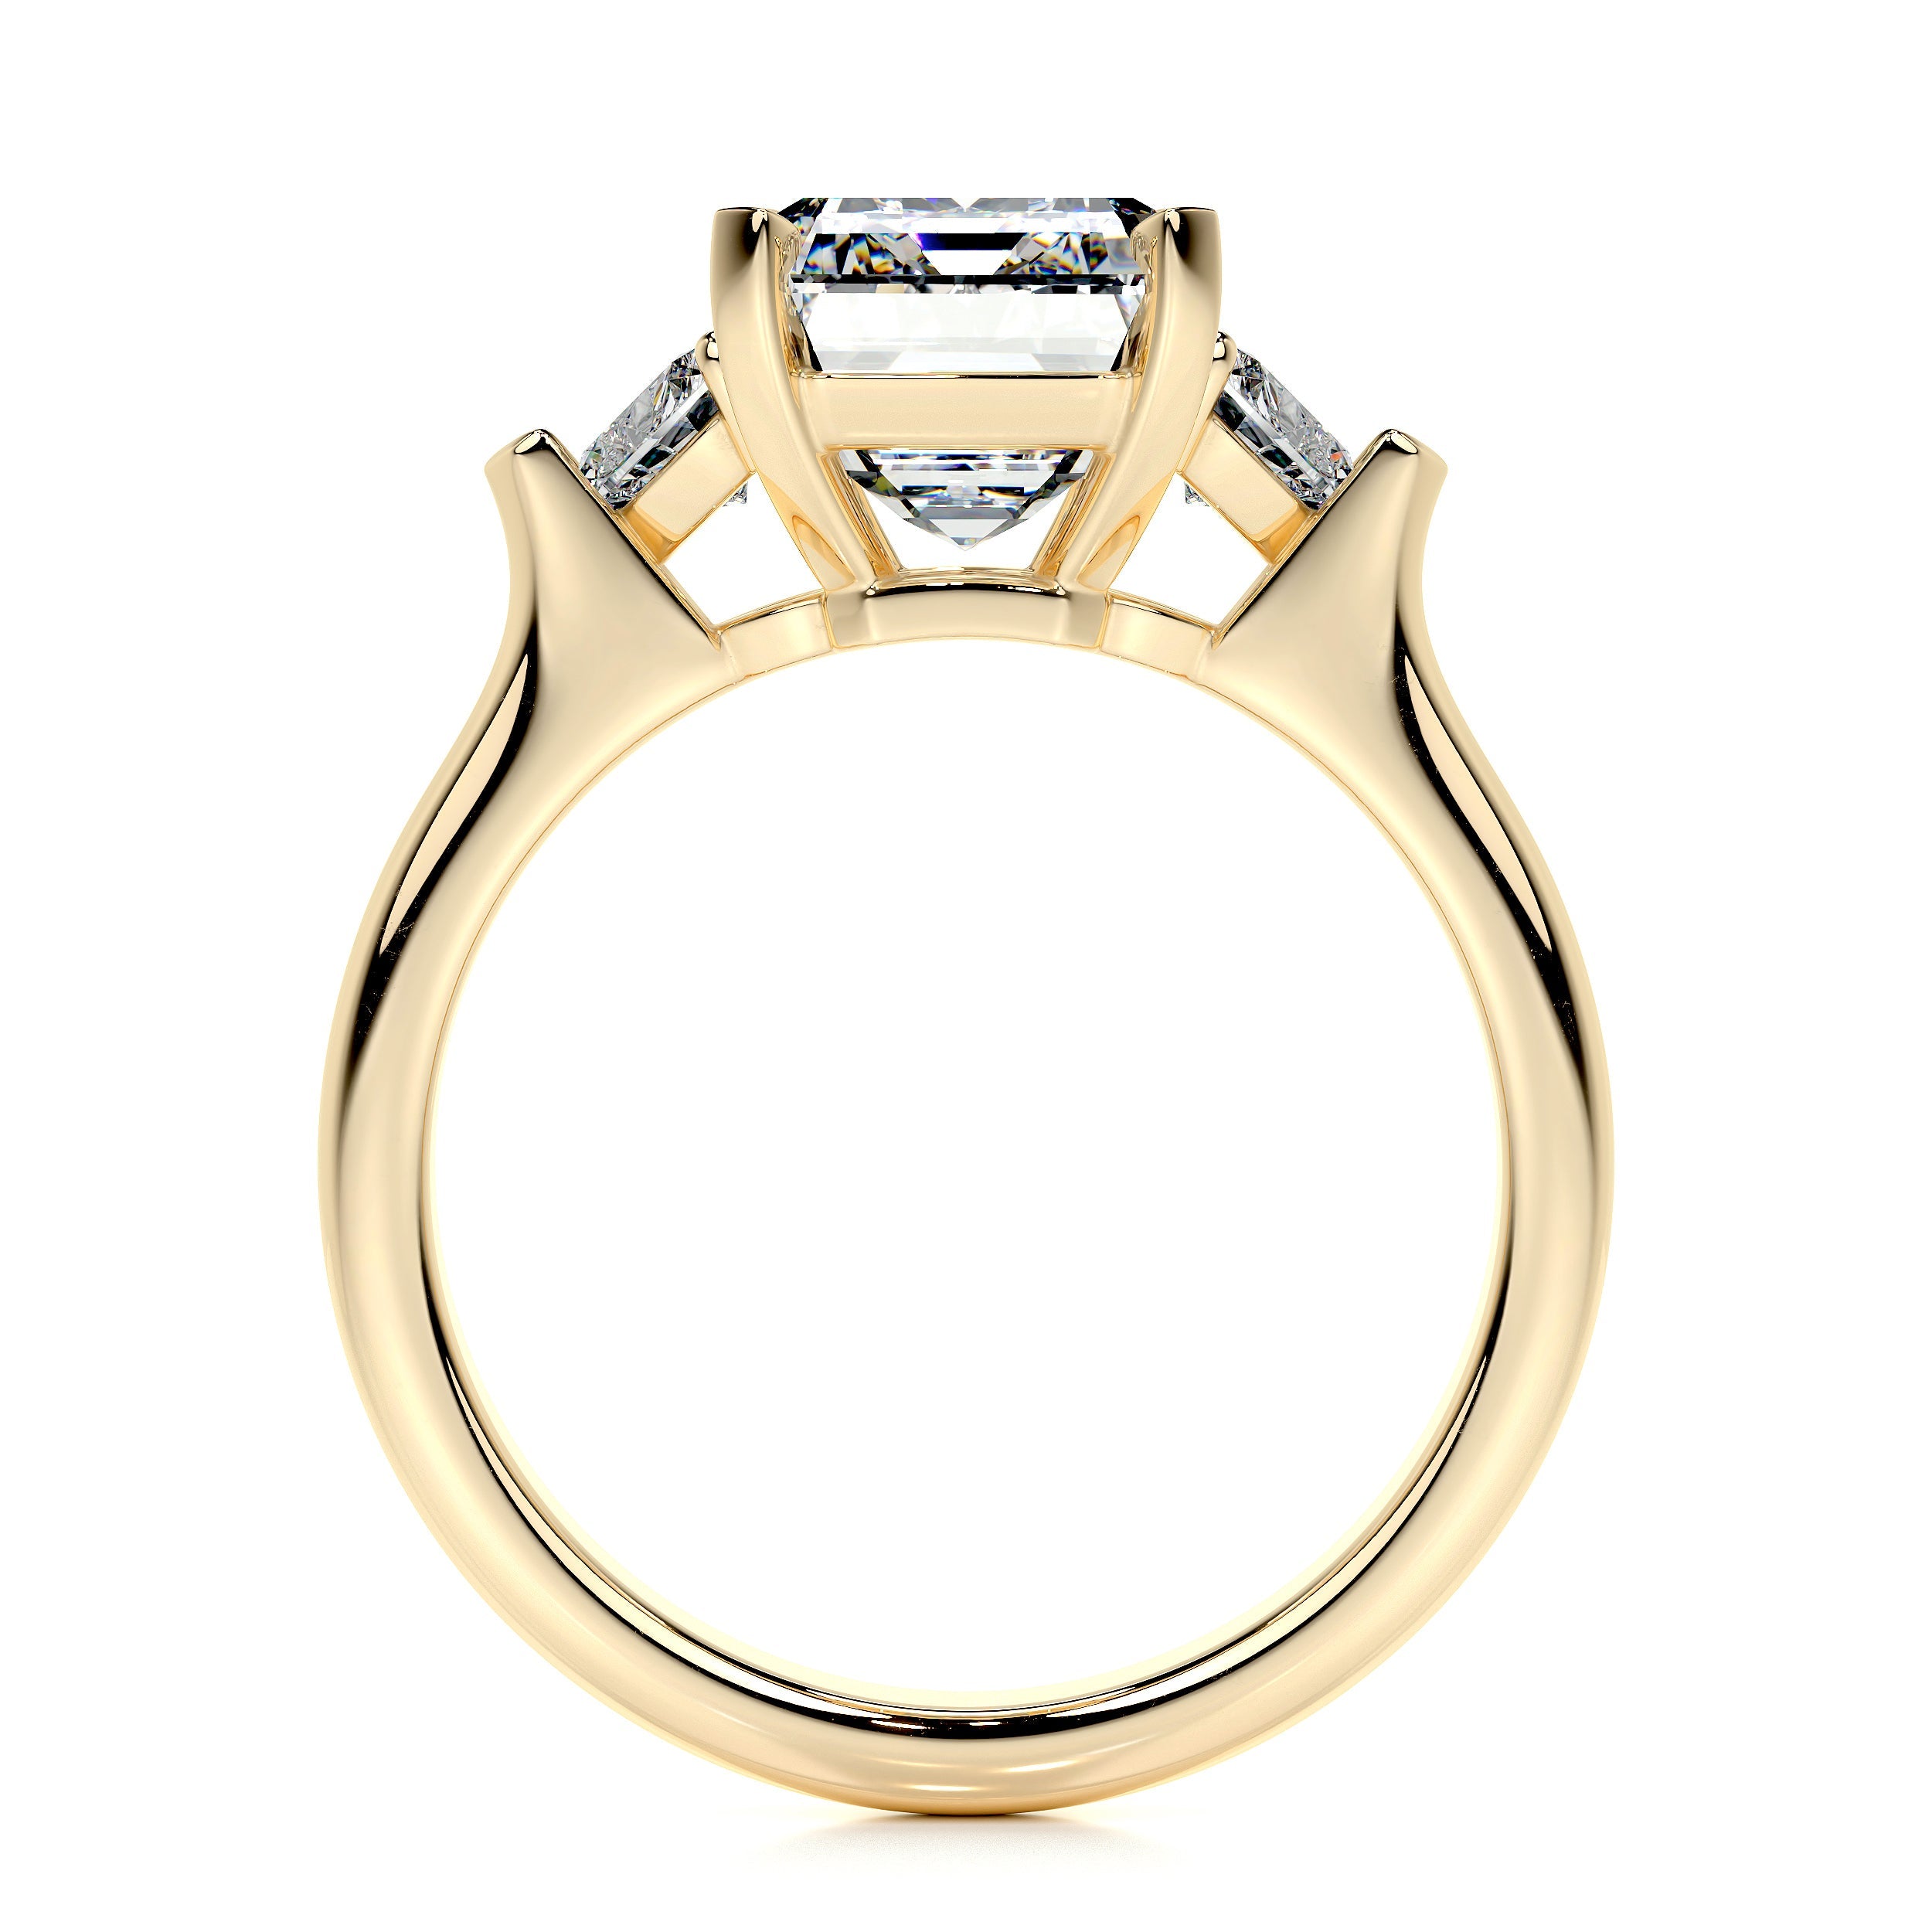 Kamala Lab Grown Diamond Ring   (5.50 Carat) -18K Yellow Gold